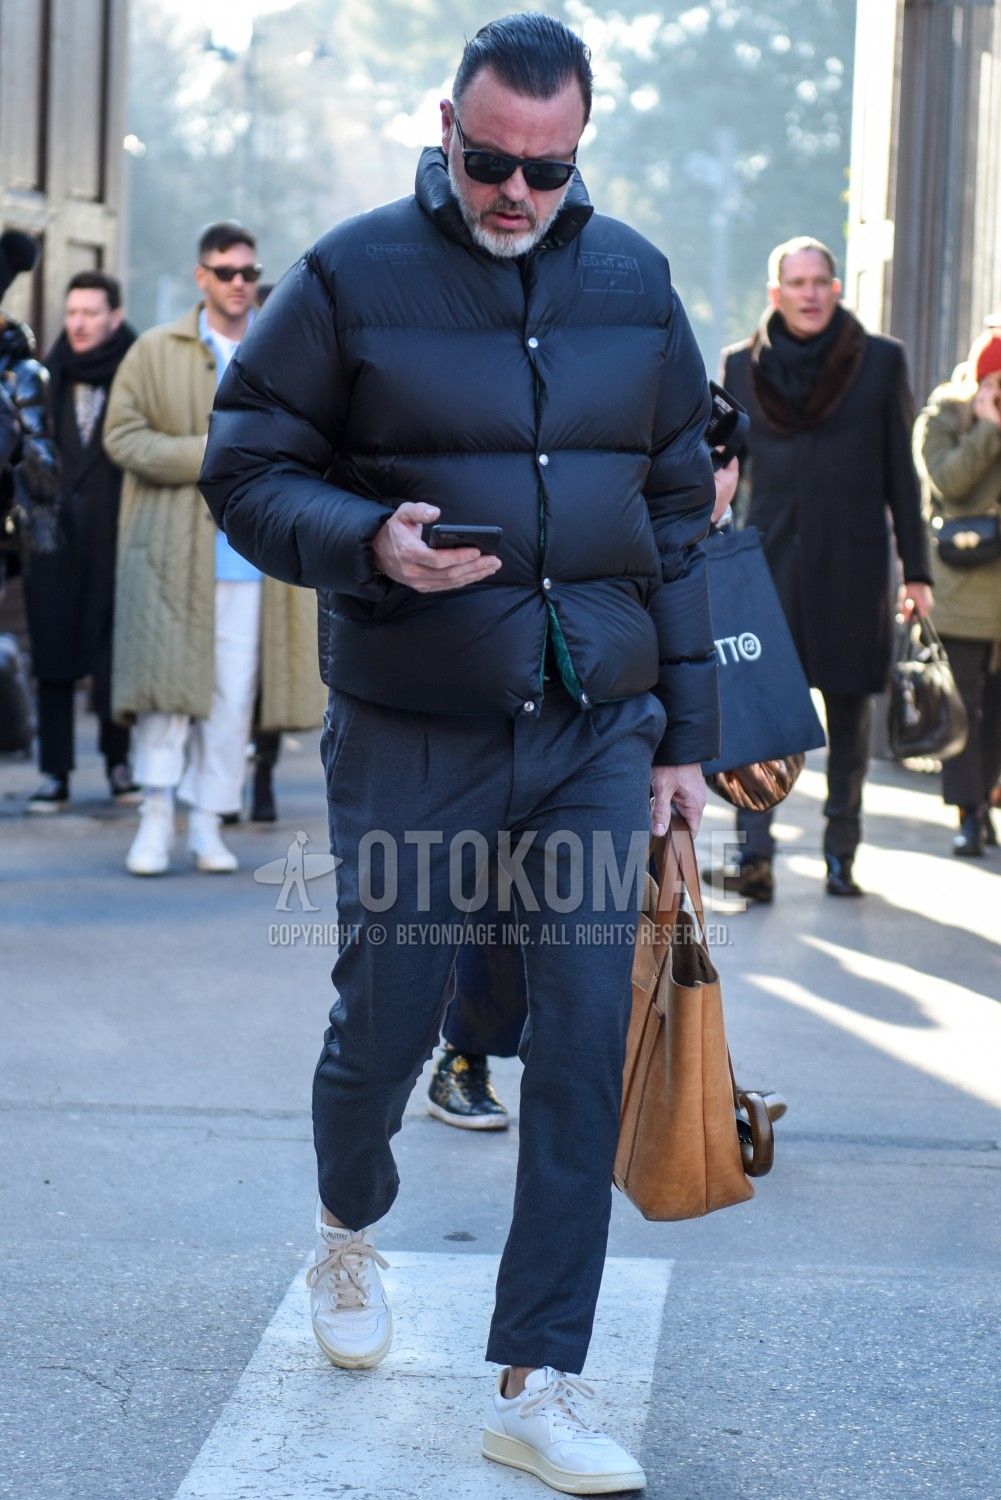 ダウンジャケットは黒でクールに 注目のメンズコーデ おすすめアイテムを紹介 メンズファッションメディア Otokomae 男前研究所